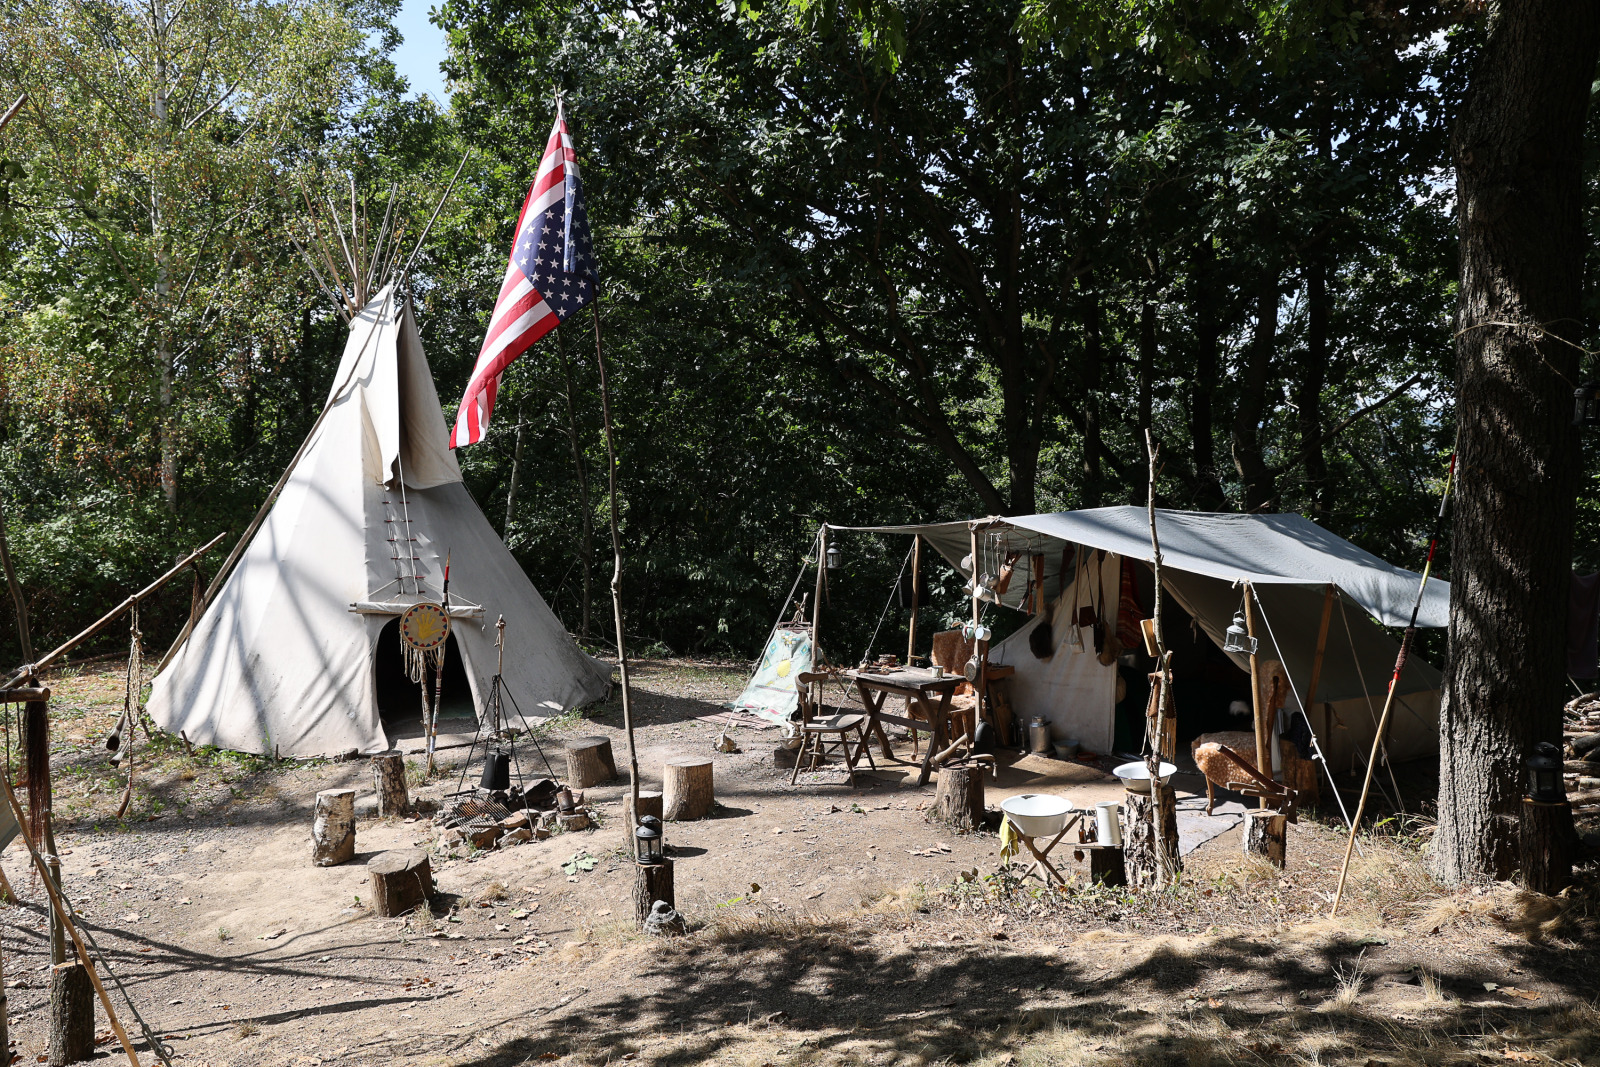 Campement et tipi indien - L'Ouest américain en Belgique - Chaudfontaine